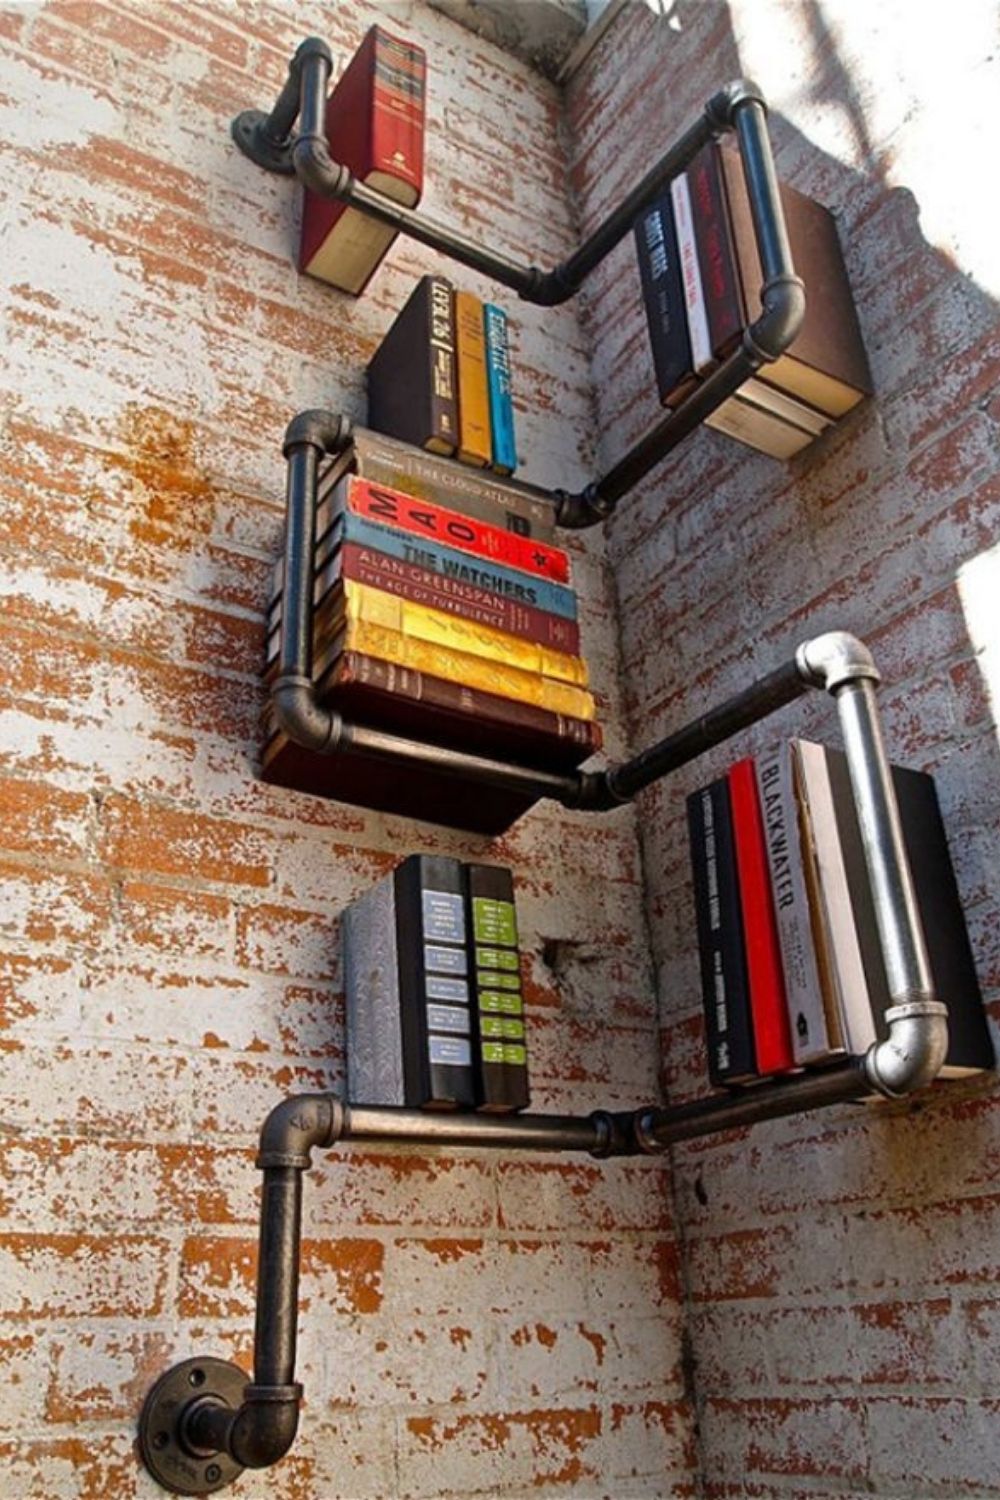 Brilliant home office bookshelves ideas